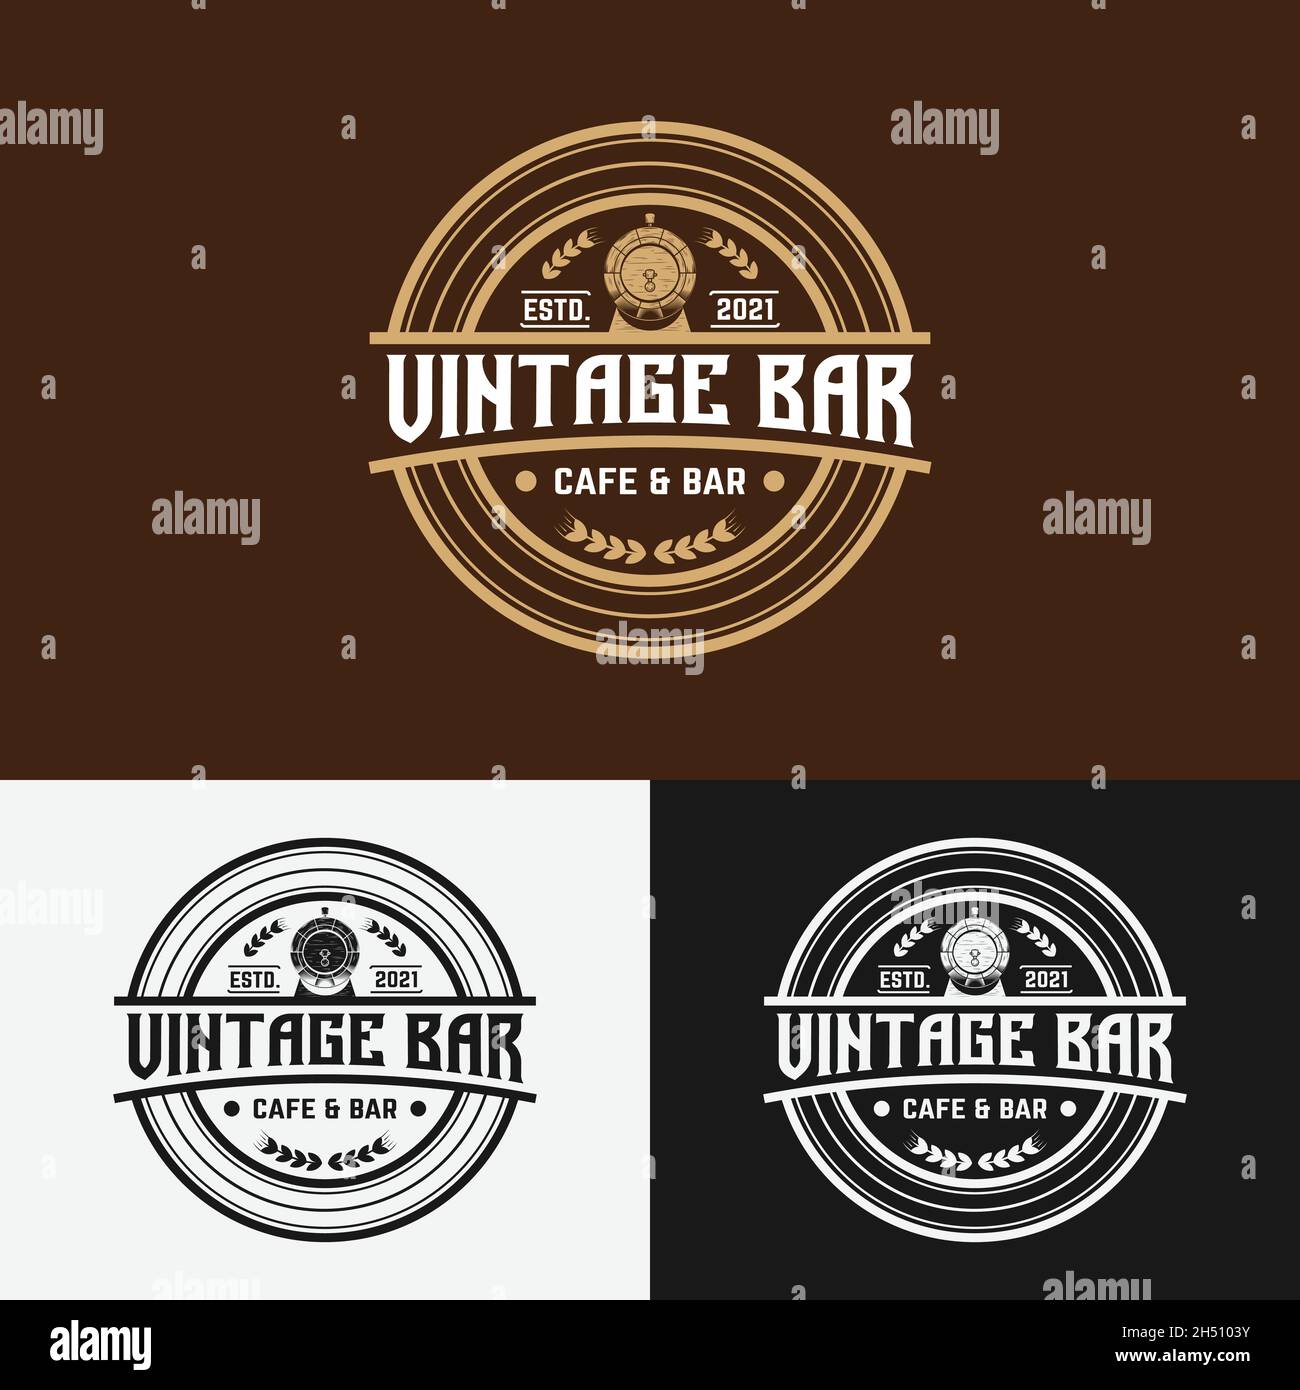 Design-Vorlage Für Logo-Emblem Der Vintage Bar Cafe Mit Stempeletikett. Geeignet für Bier Whiskey Alchohol Rum Bar Cafe Brewery Pub Restaurant etc. Stock Vektor